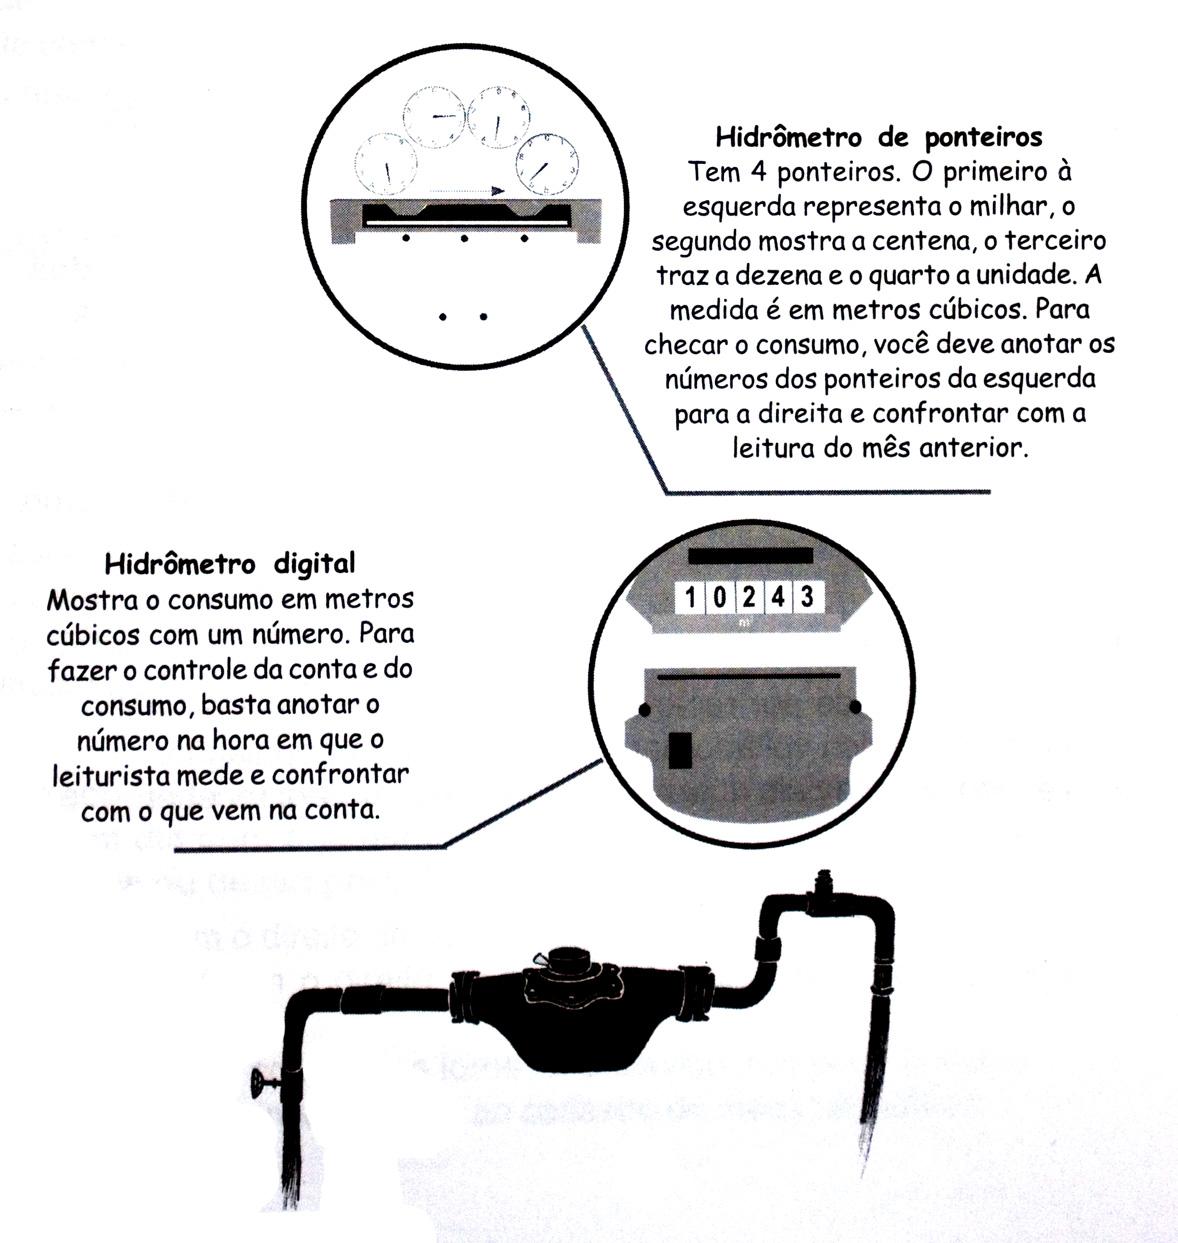 O hidrômetro possui um lacre de segurança, que não pode ser rompido pelo consumidor.